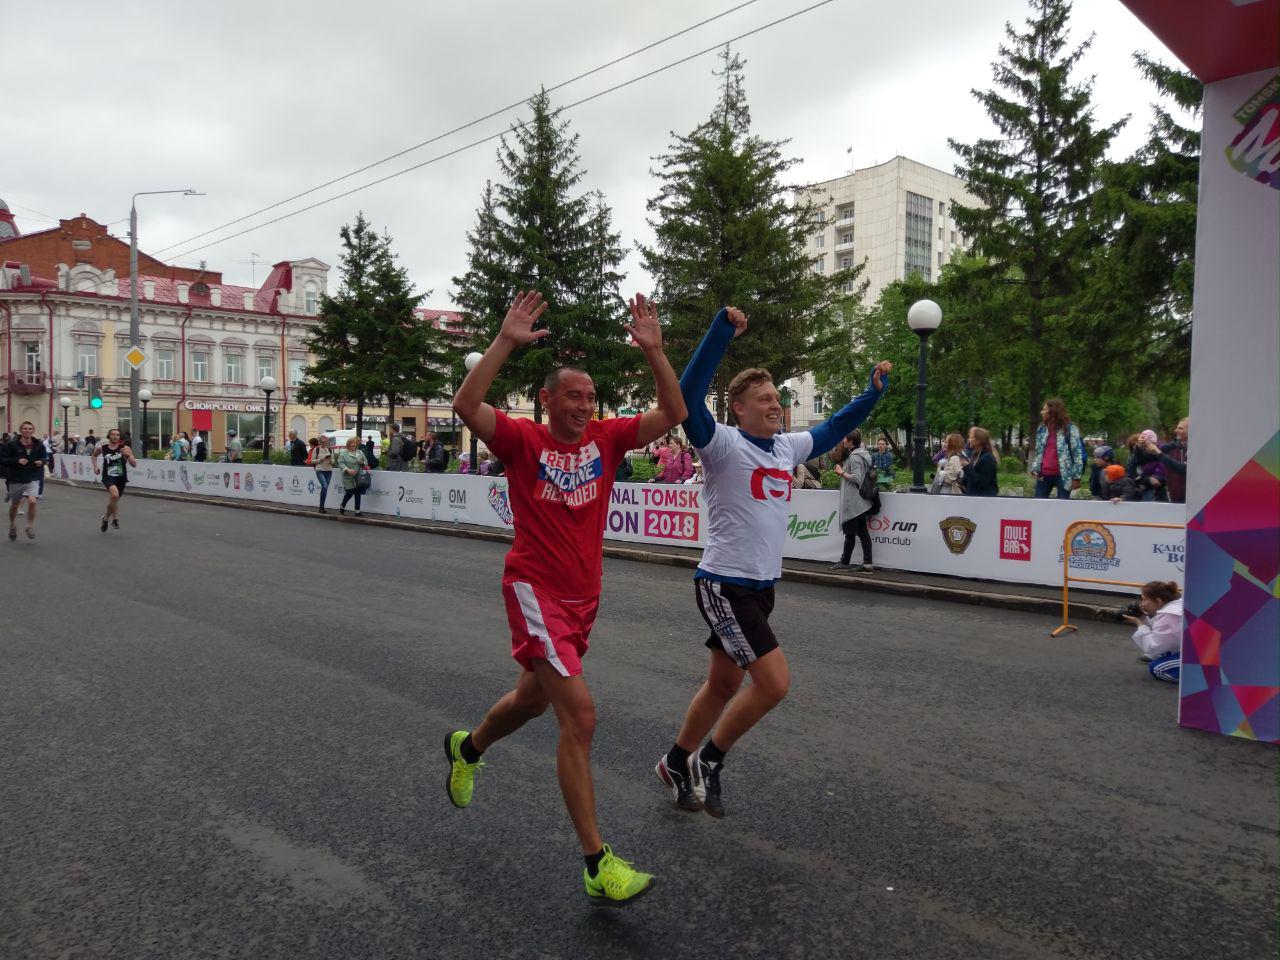 Спорт, Спорт в Томске, Томские новости, Первый томских легкоатлетический марафон подошел к концу. В нем приняли участие спортсмены из 24 суб Томский марафон закончился